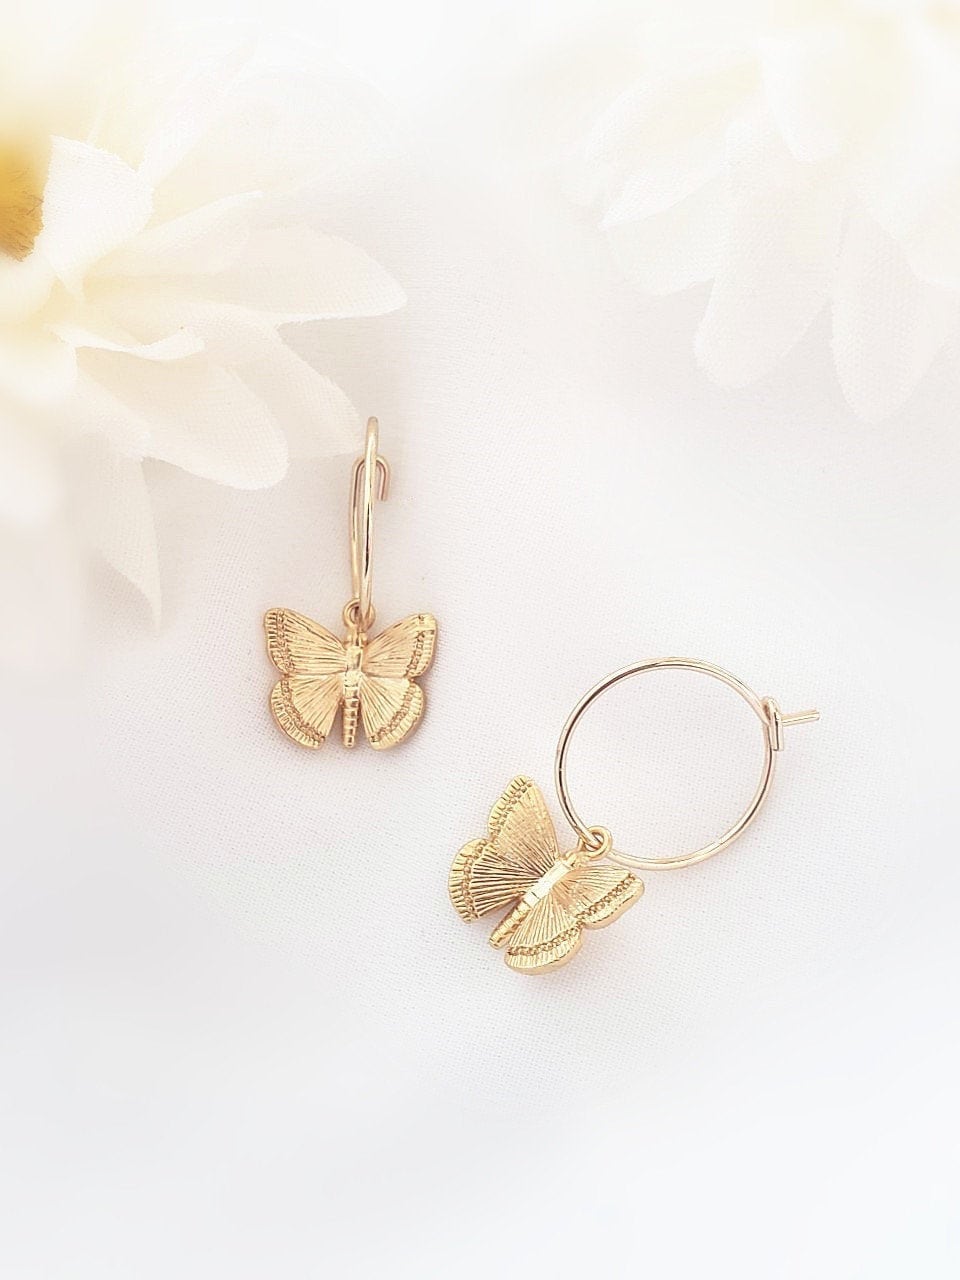 Butterfly Hoop Earrings. Gold Hoop Earrings with Charm Dainty | Etsy